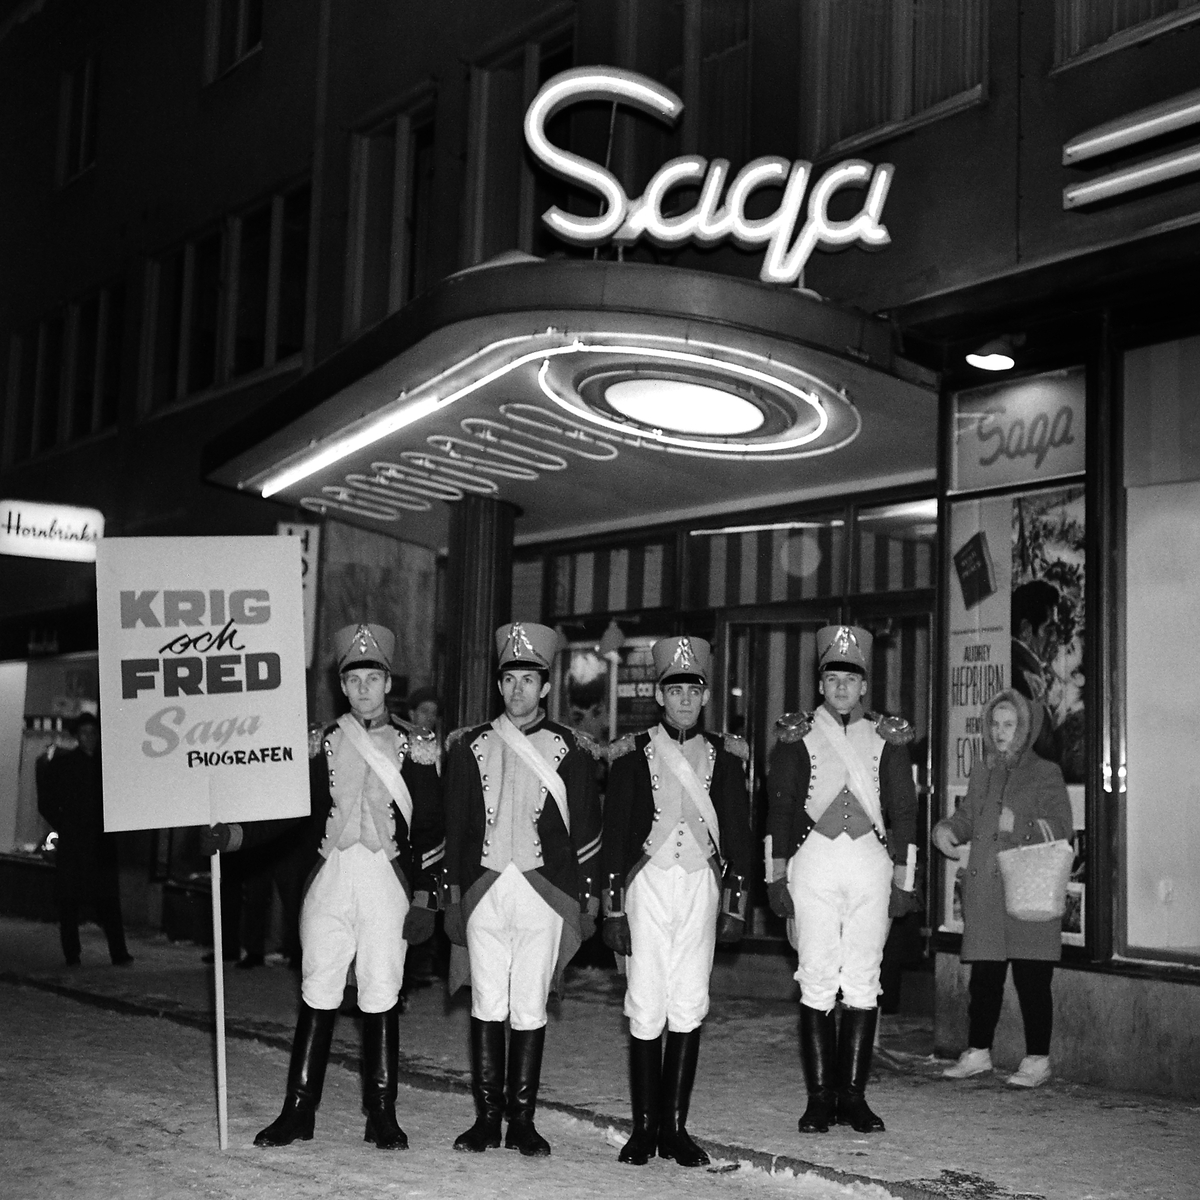 Filmpremiär på Saga biografen, "Krig och fred", 1958.